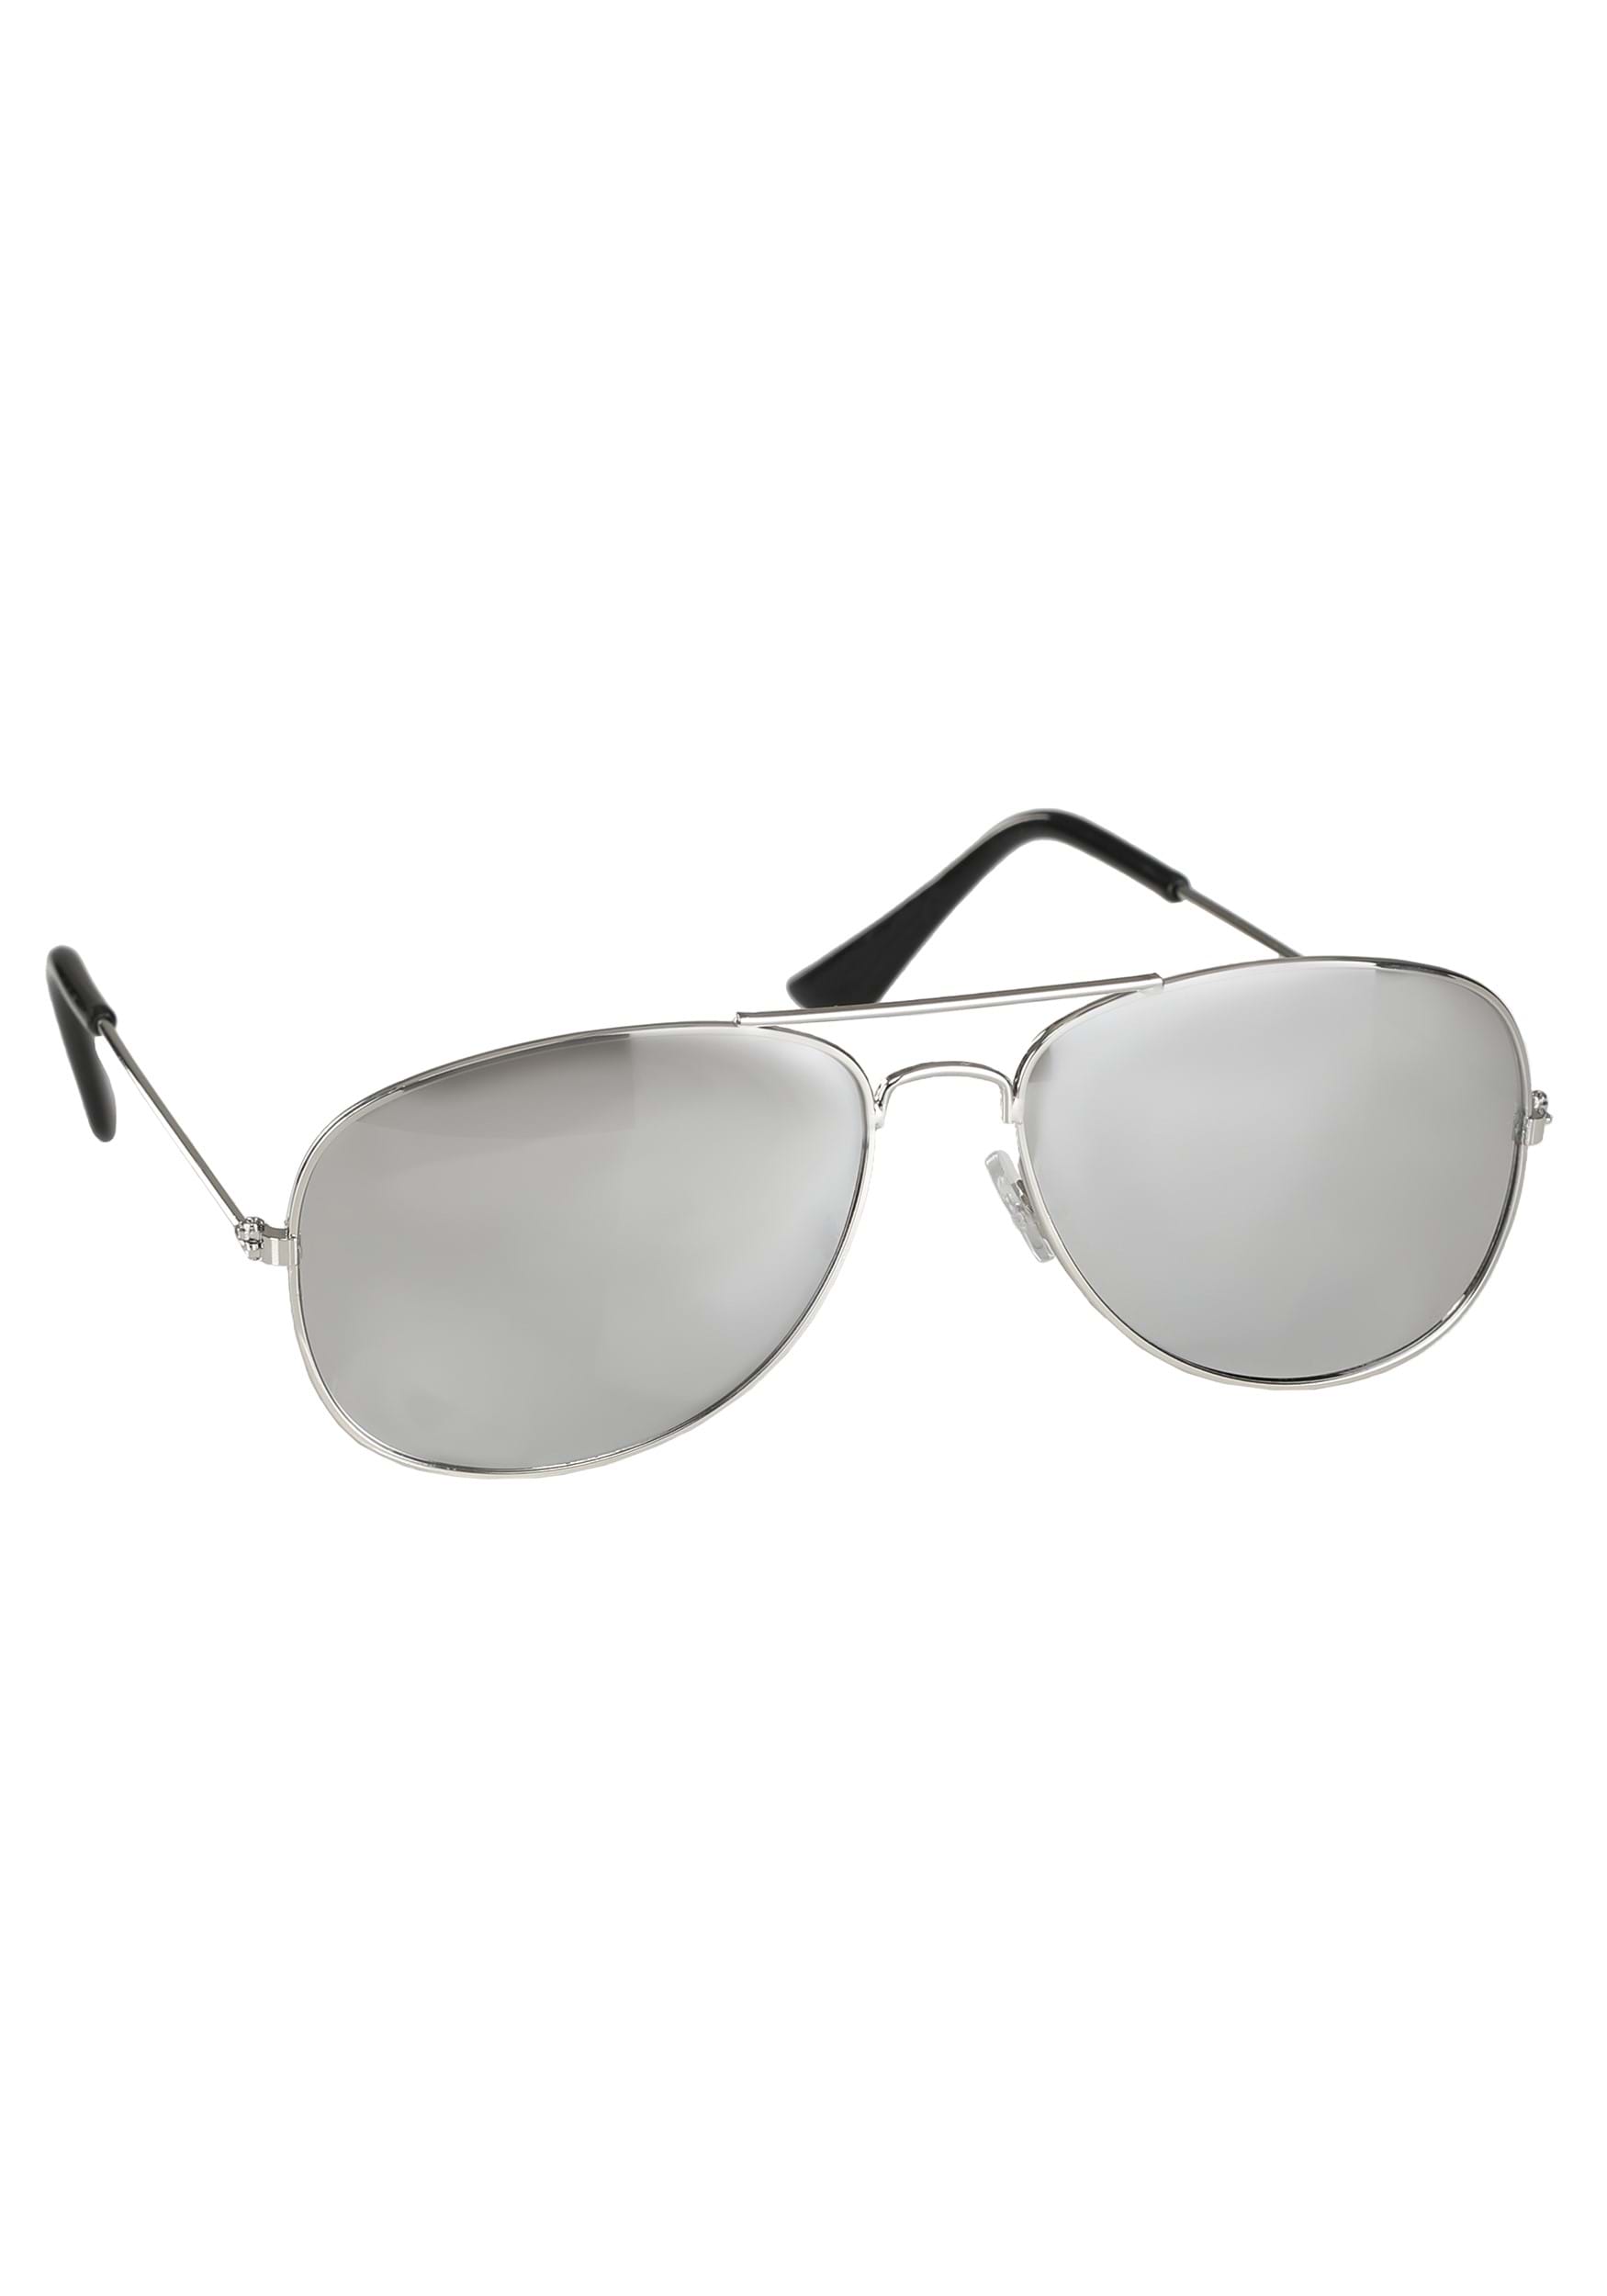 Silver Police Mirror Sunglasses | Accessories